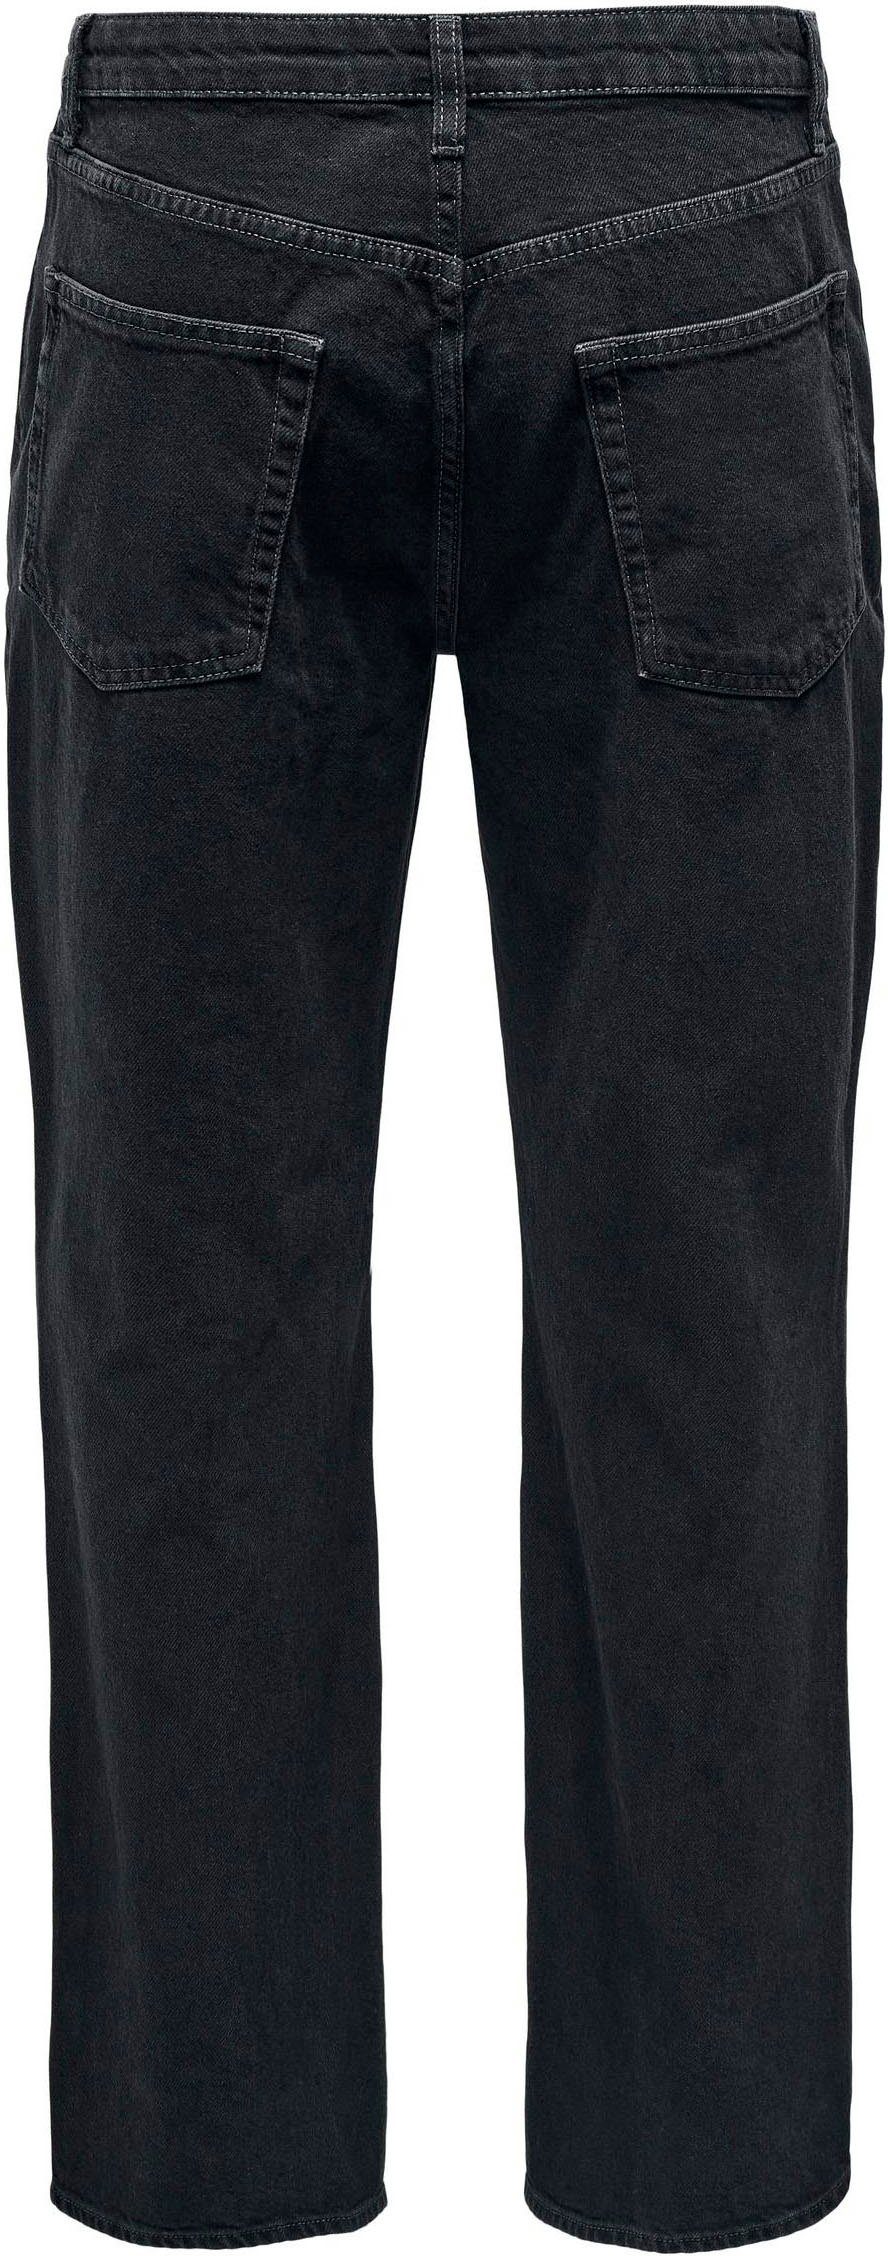 ONLY SLIM NOOS LBD AZG Black & Slim-fit-Jeans Washed 8263 ONSLOOM DNM SONS